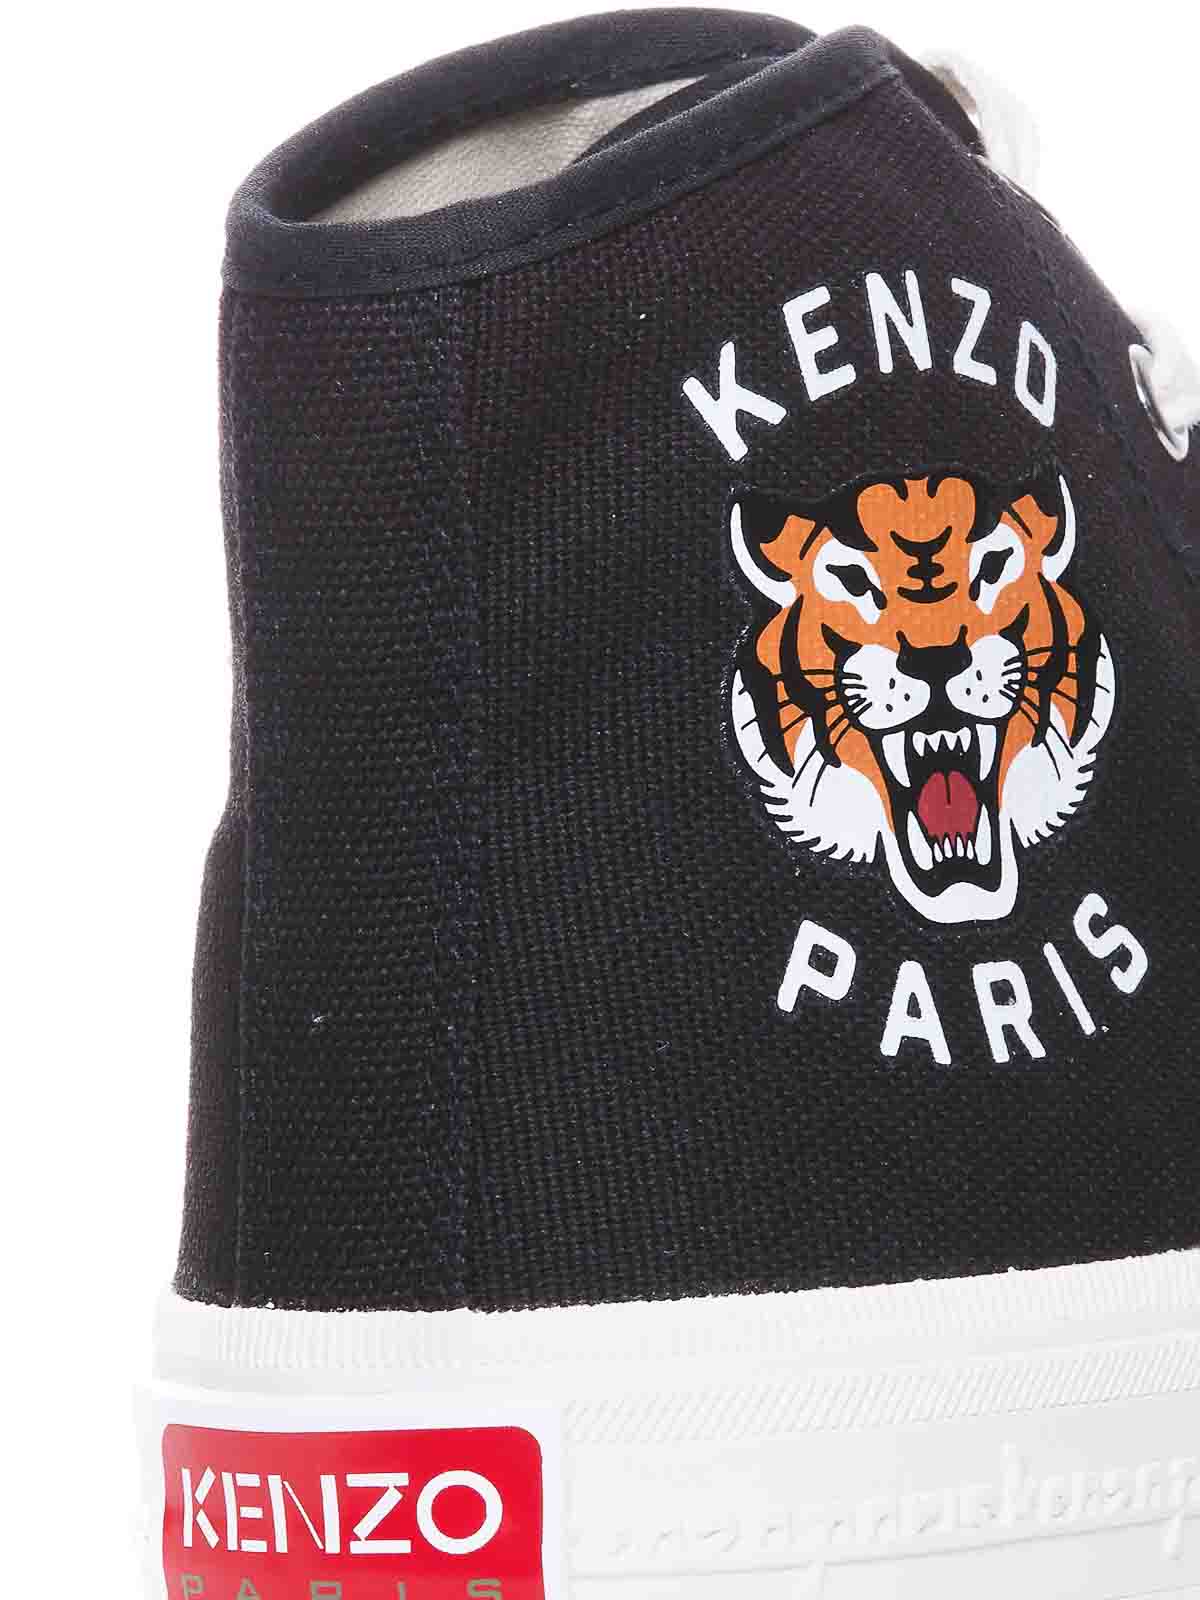 Shop Kenzo Foxy High Sneakers In Black